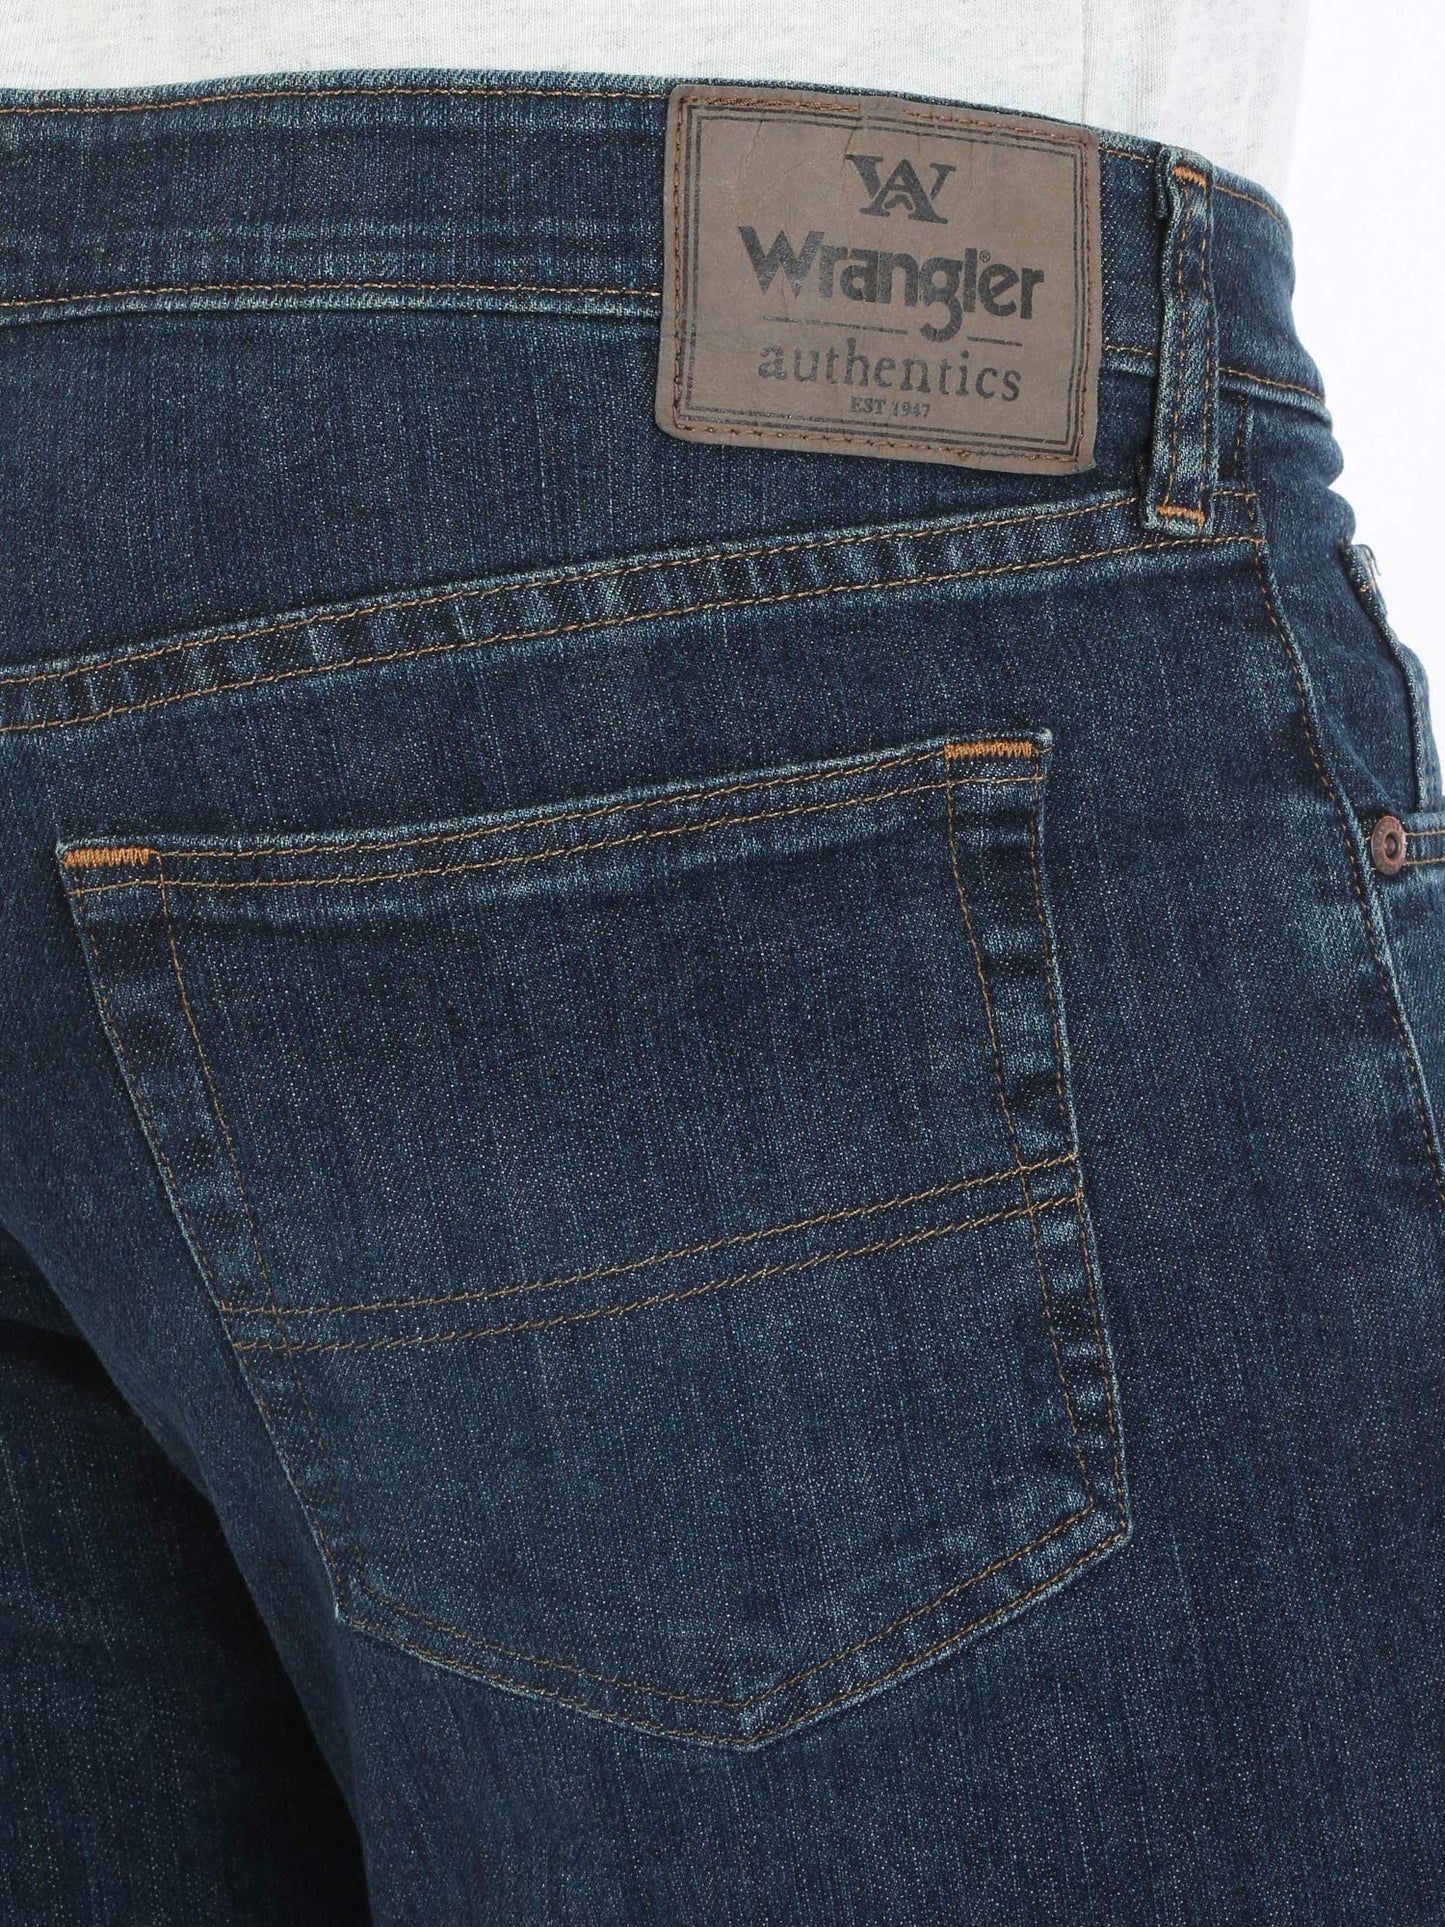 Wrangler Authentics Men's Comfort Flex Waist Relaxed Fit Jean, Carbon, 36W X 36L